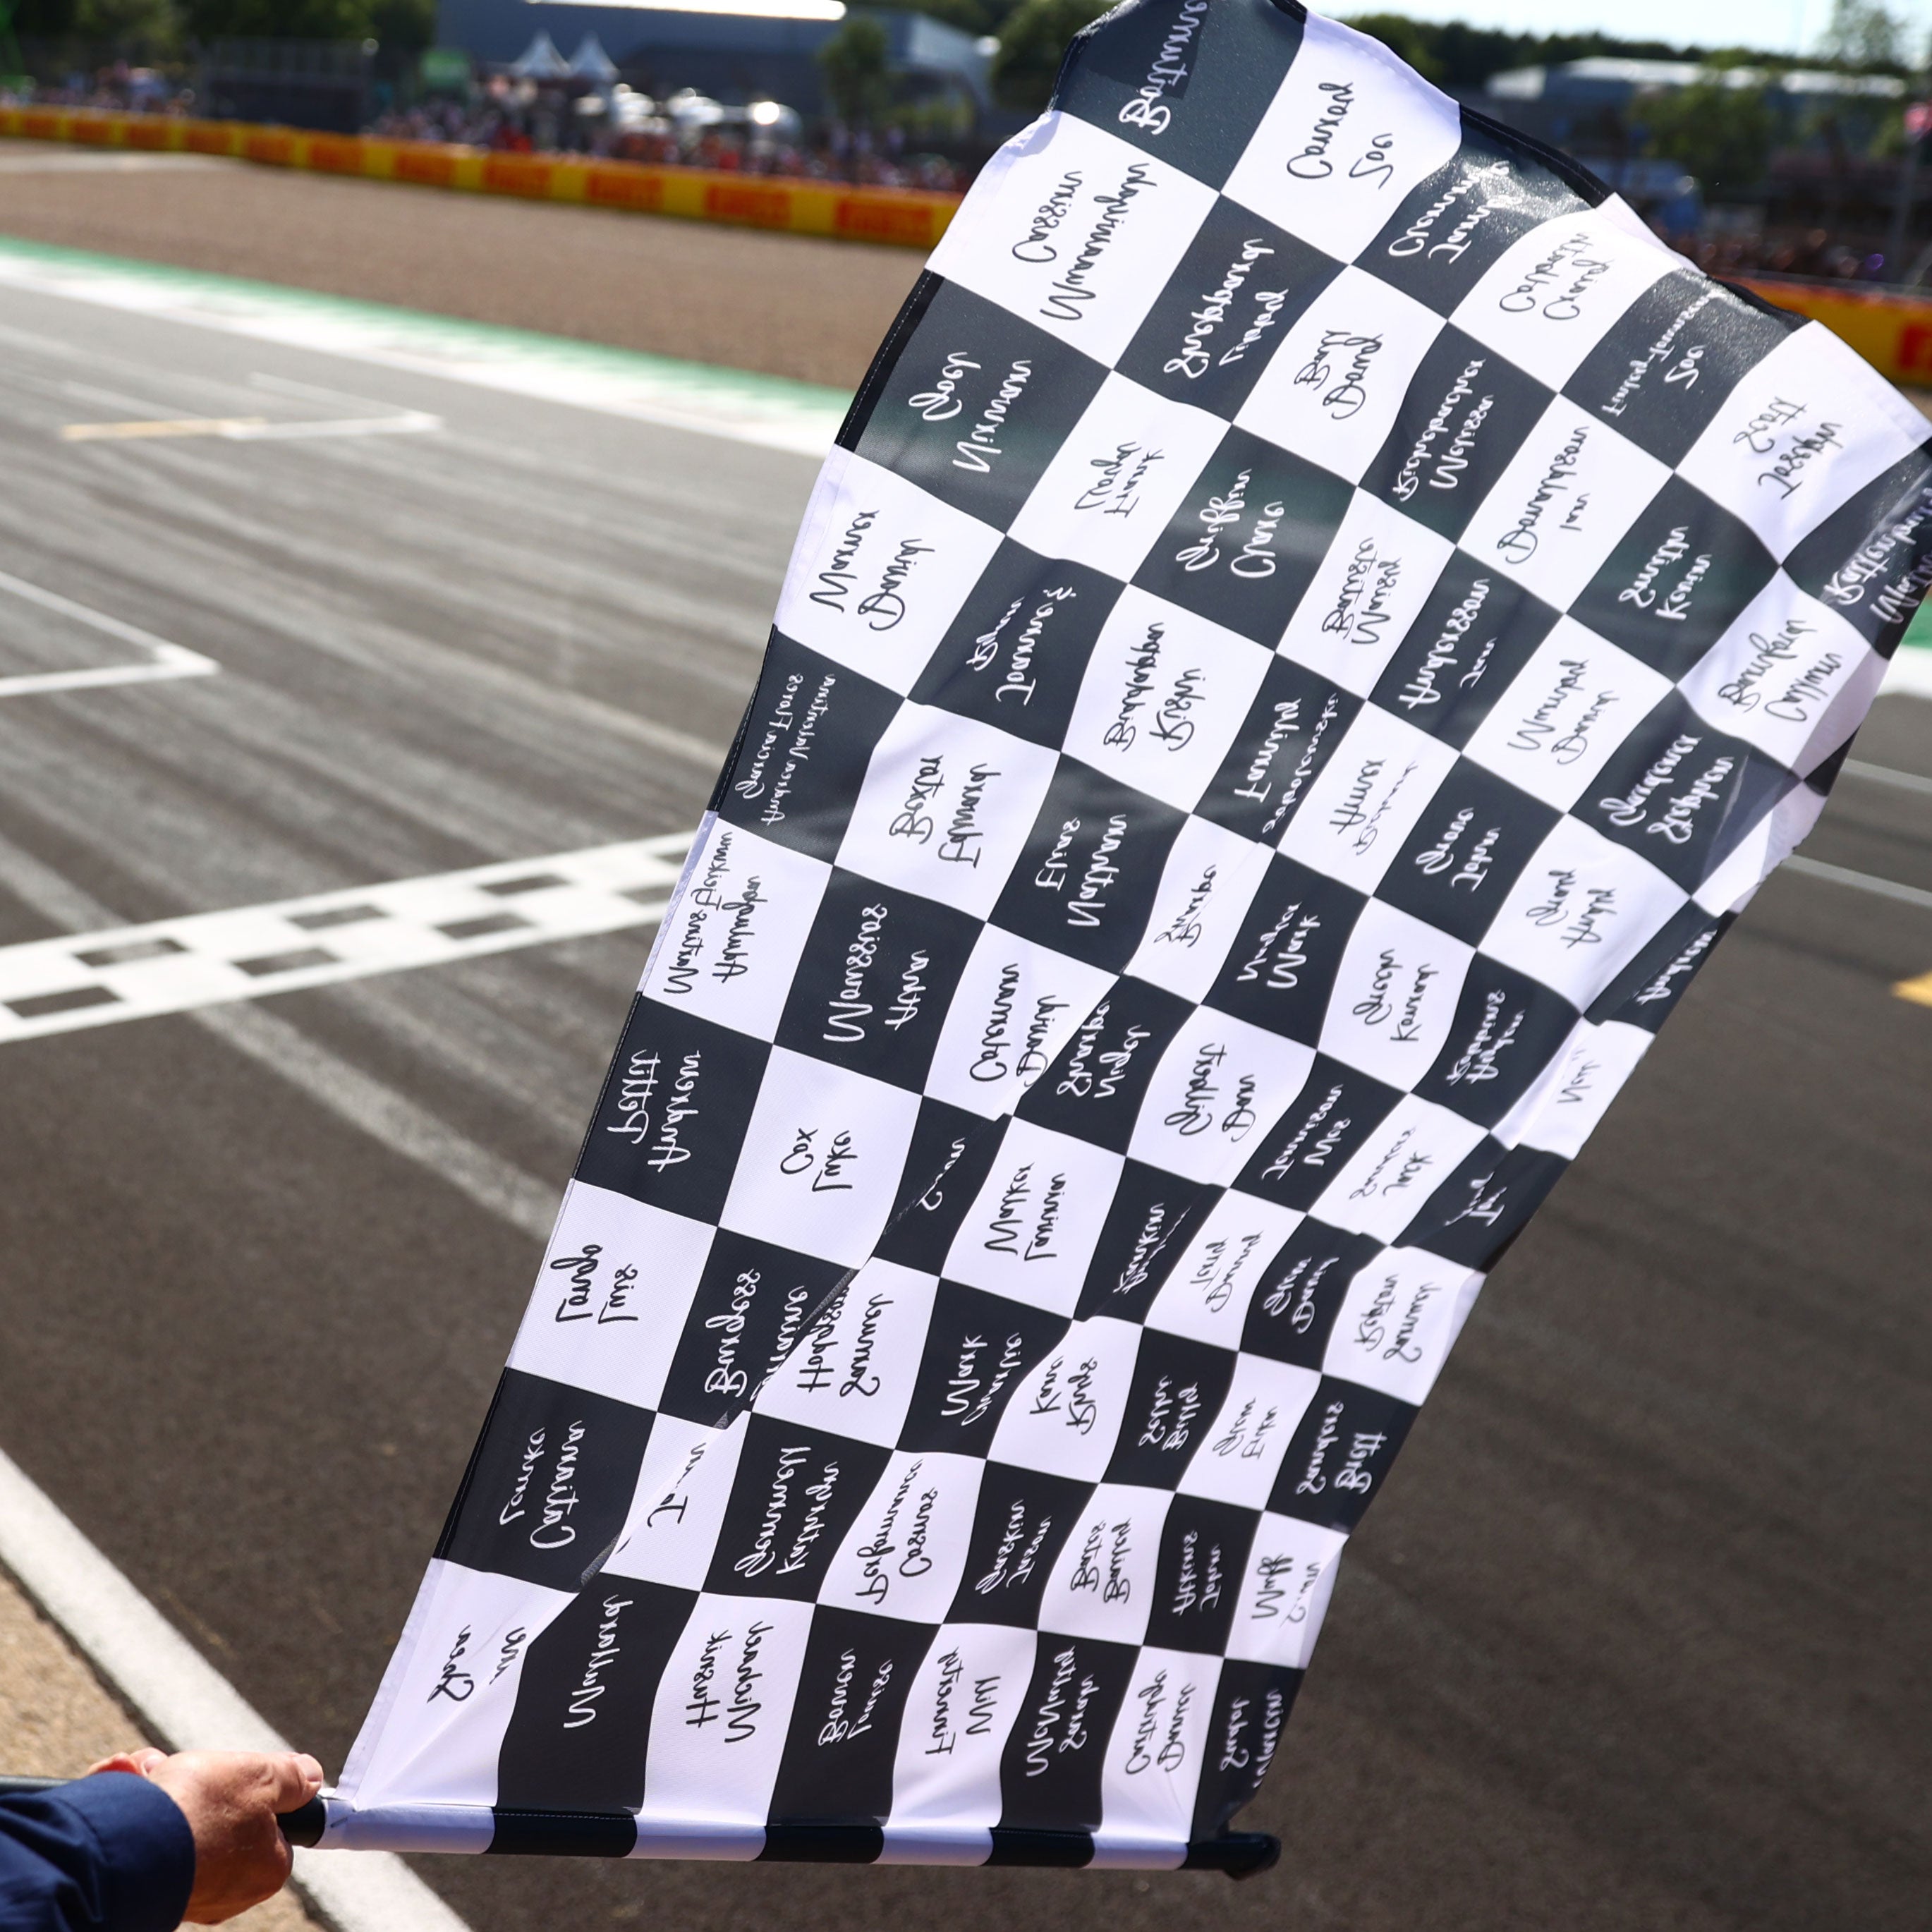 Pol Espargaró Signed 2023 MotoGP Chequered Flag Square - Valencia GP